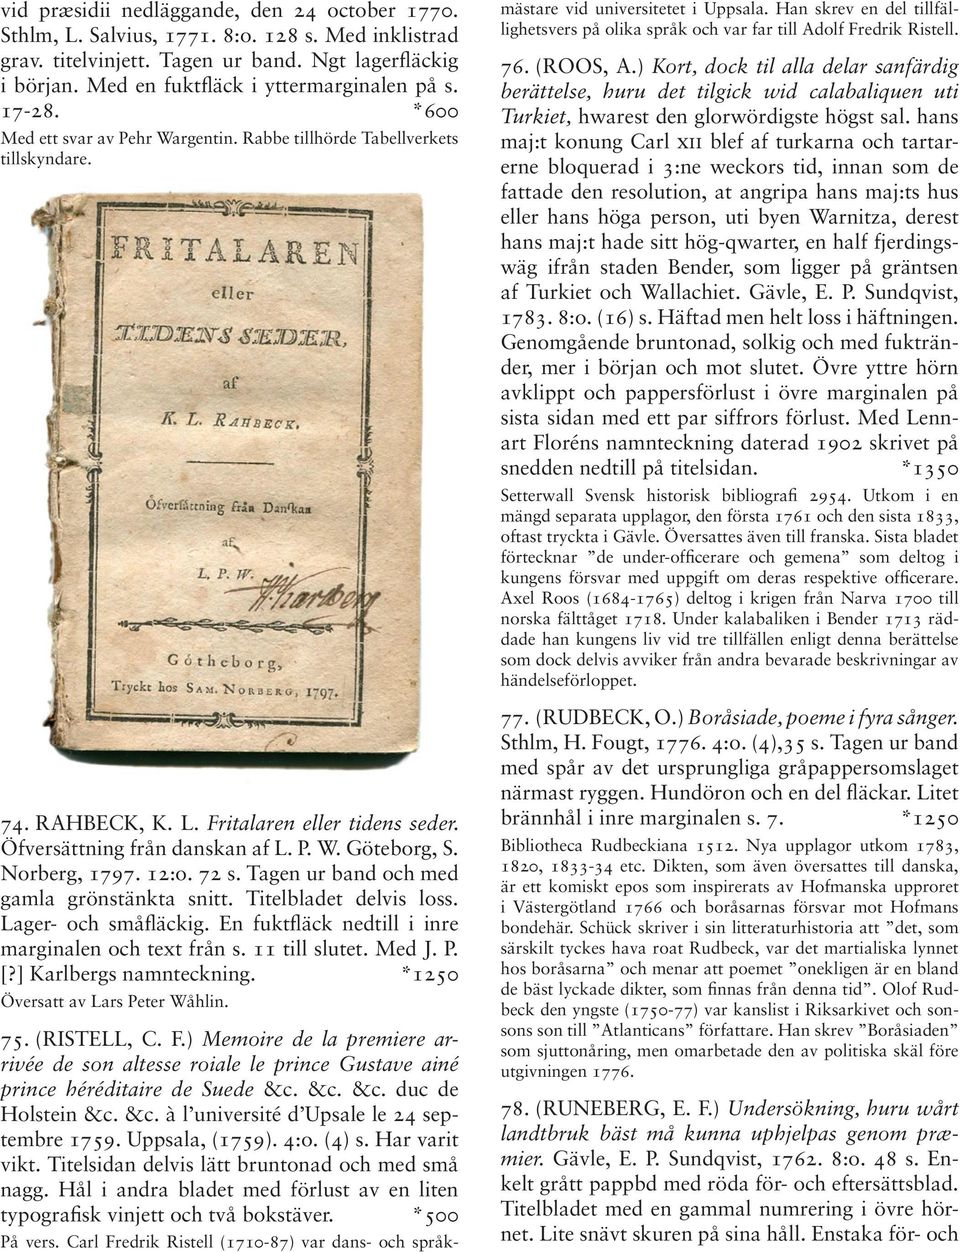 Öfversättning från danskan af L. P. W. Göteborg, S. Norberg, 1797. 12:o. 72 s. Tagen ur band och med gamla grönstänkta snitt. Titelbladet delvis loss. Lager- och småfläckig.